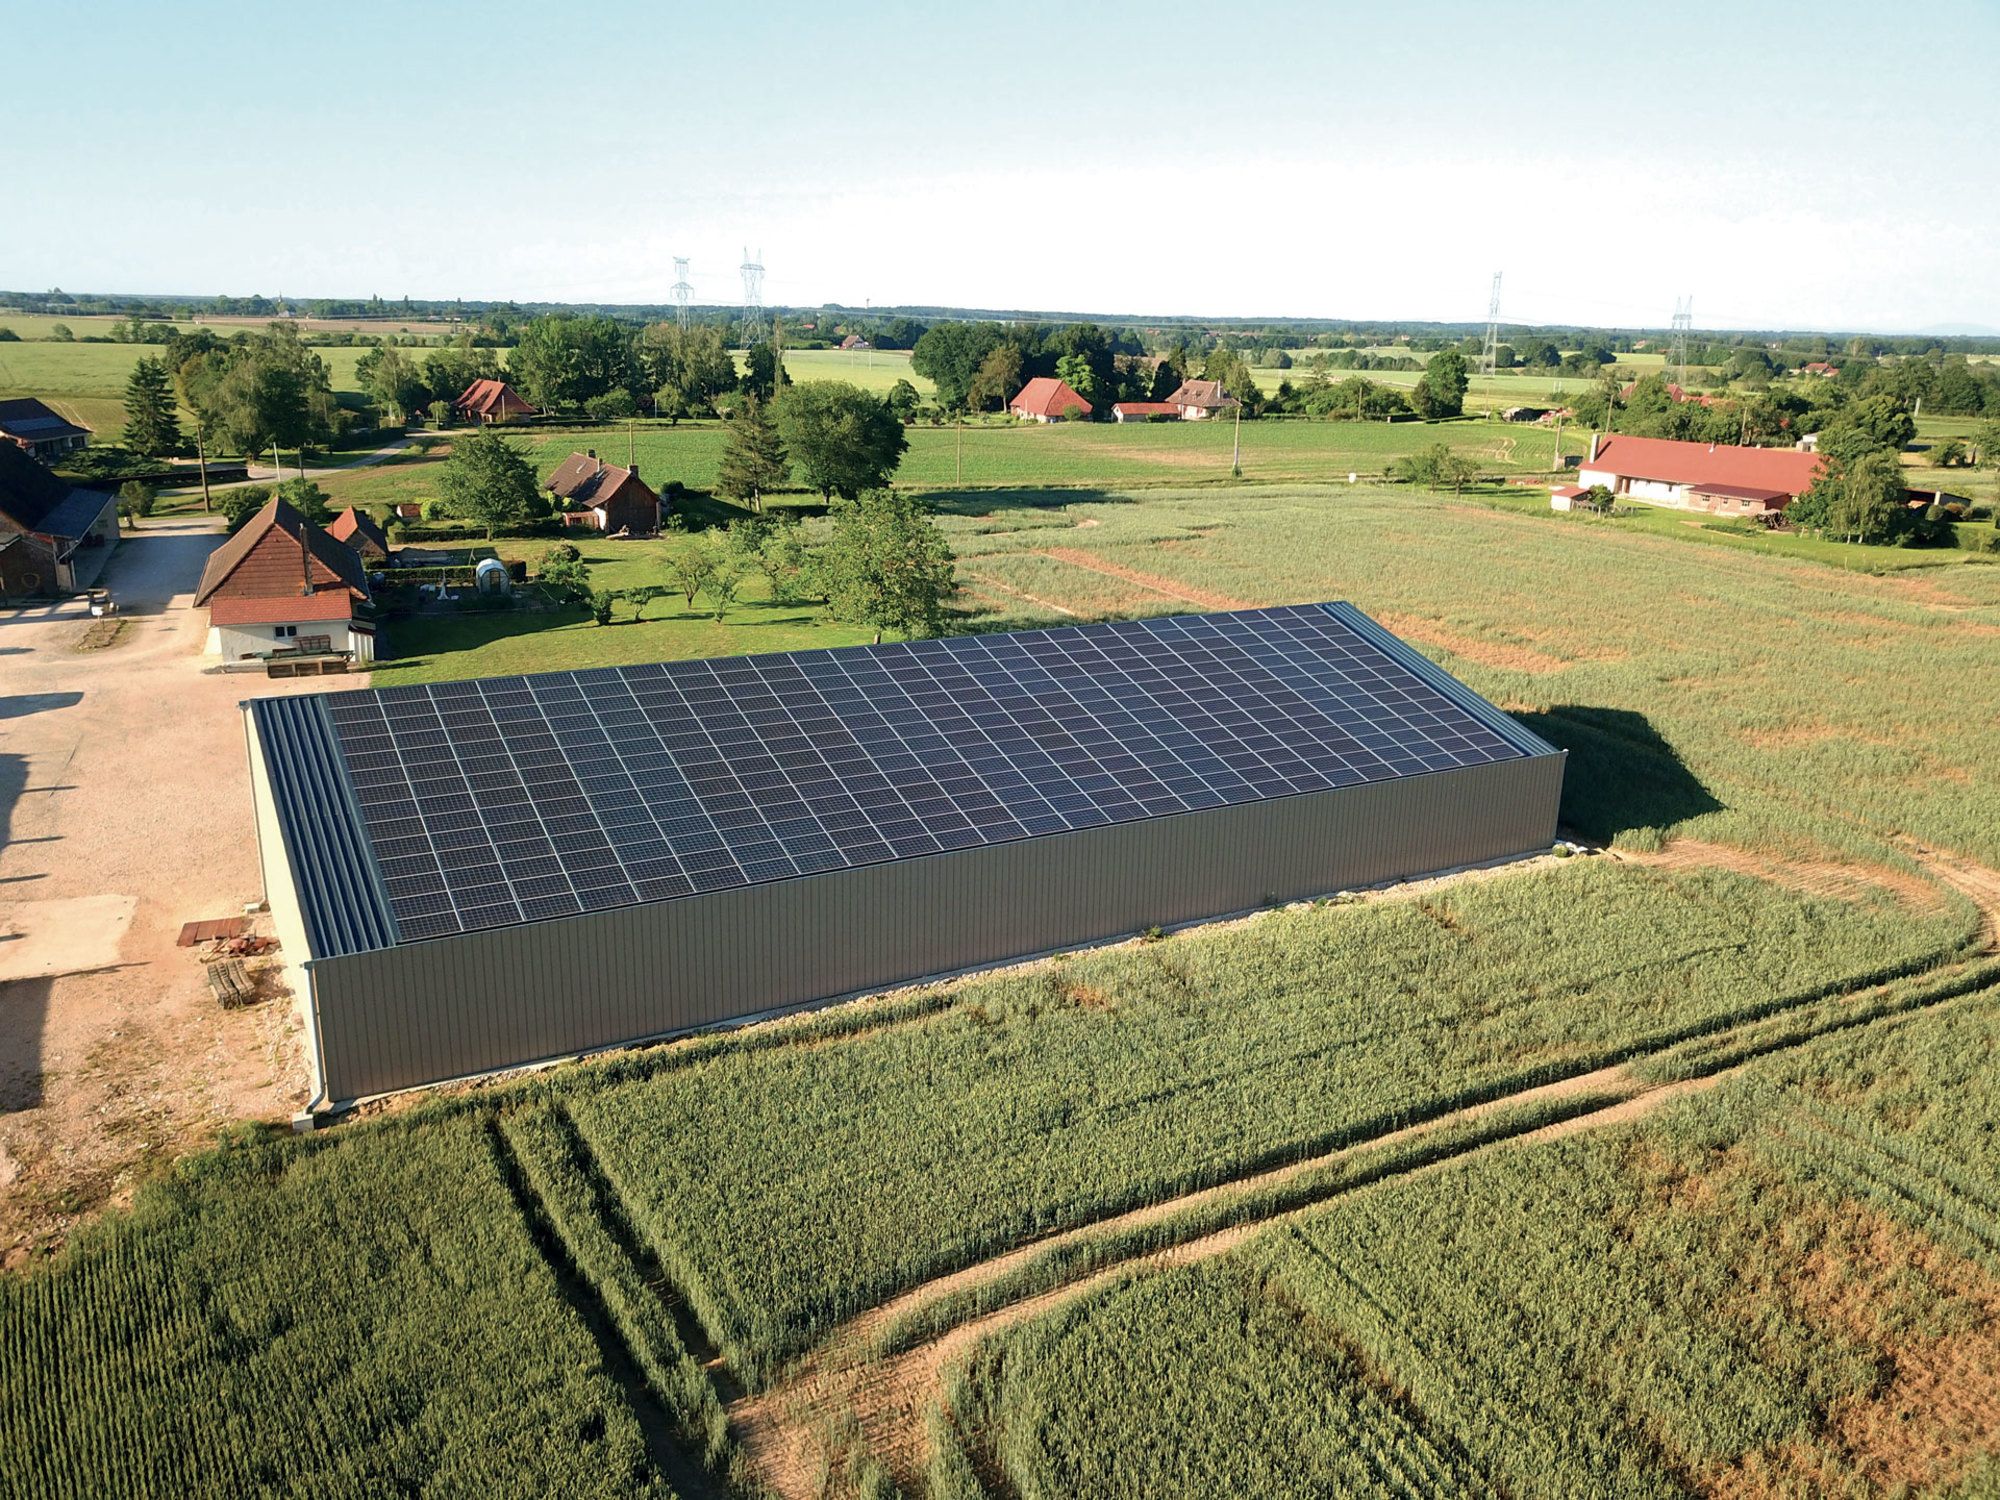 Bâtiment agricole avec toiture photovoltaïque par Le Triangle, intégré harmonieusement dans un paysage rural vaste et ouvert.